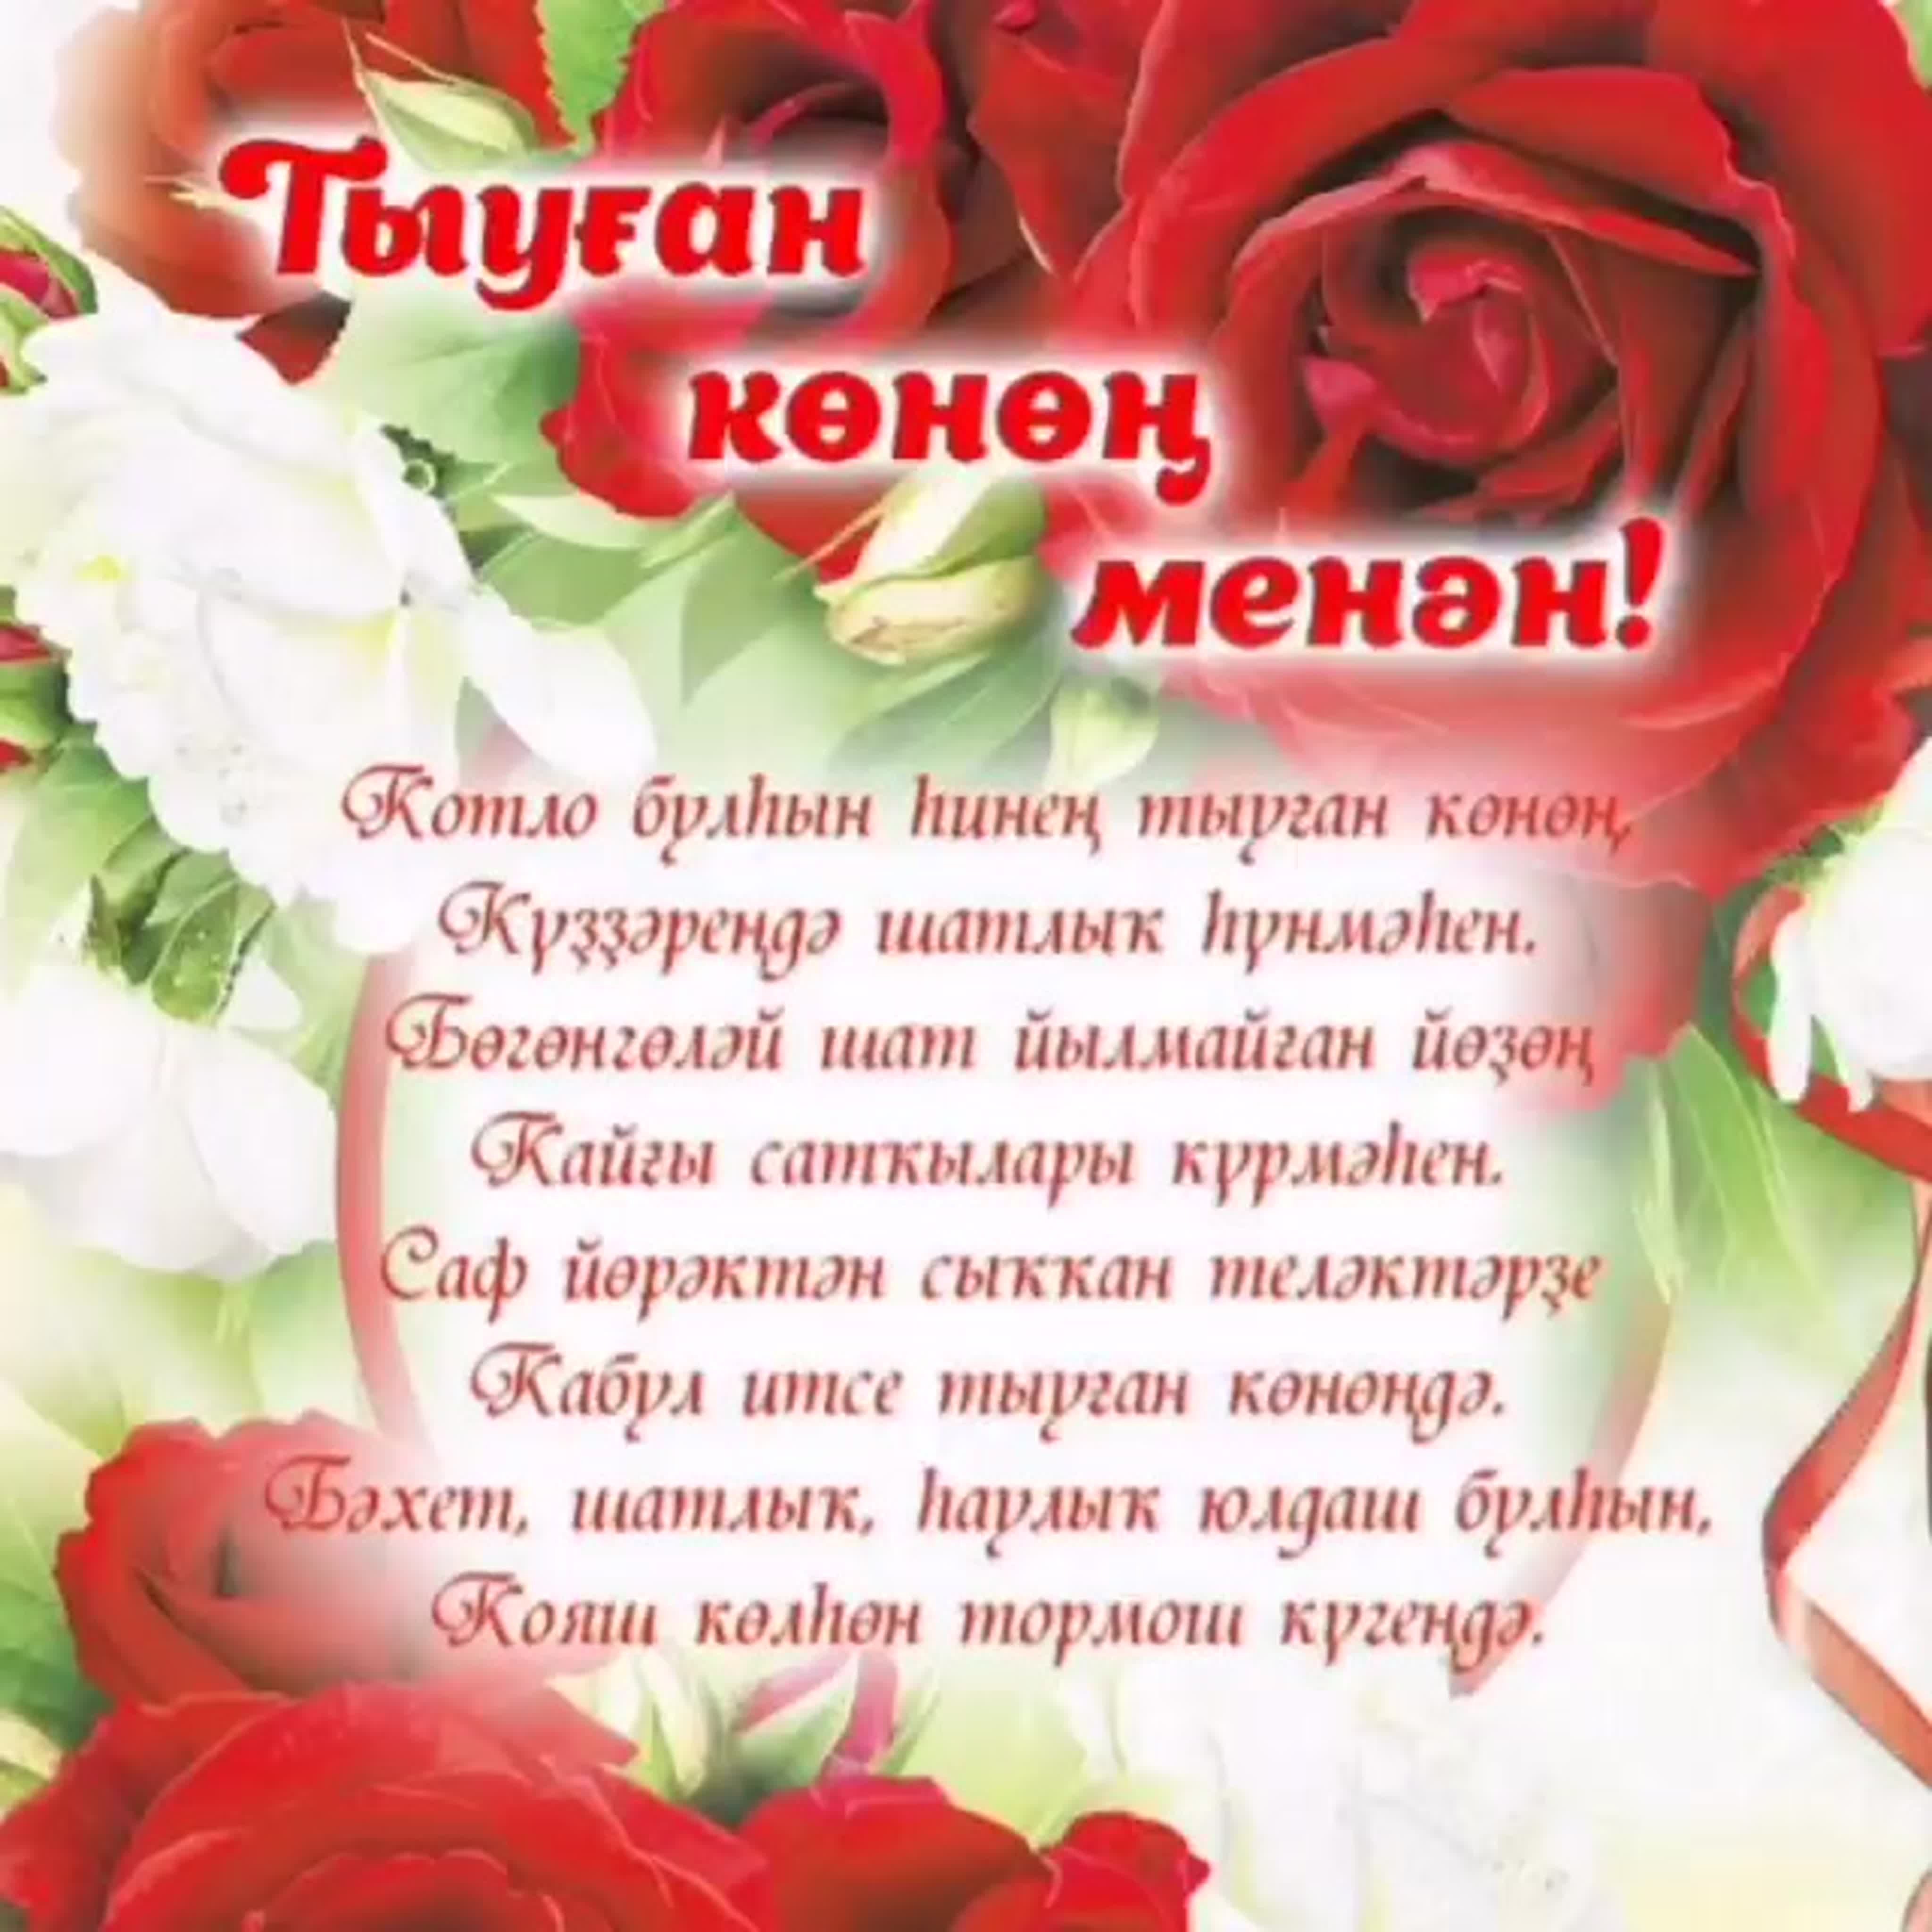 Поздравление папы на татарском с днем рождения. Поздравления на башкирском языке. Поздравления с днём рождения на башкирском языке. Поздравление на татарском языке. Поздравления с днём рождения женщине на башкирском языке.